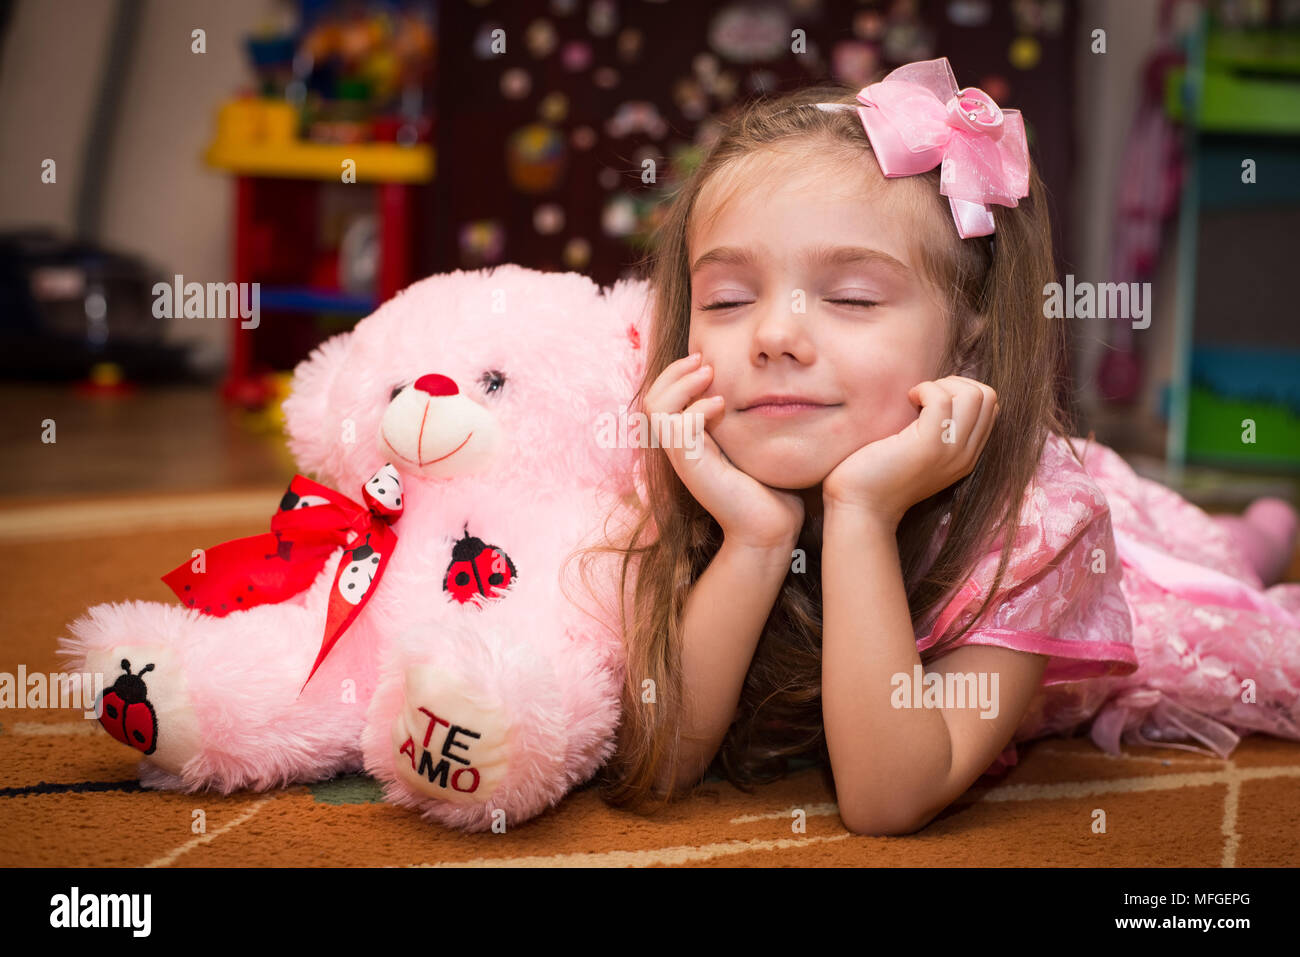 Petite fille dans une robe rose se trouve sur le sol avec un jouet Banque D'Images